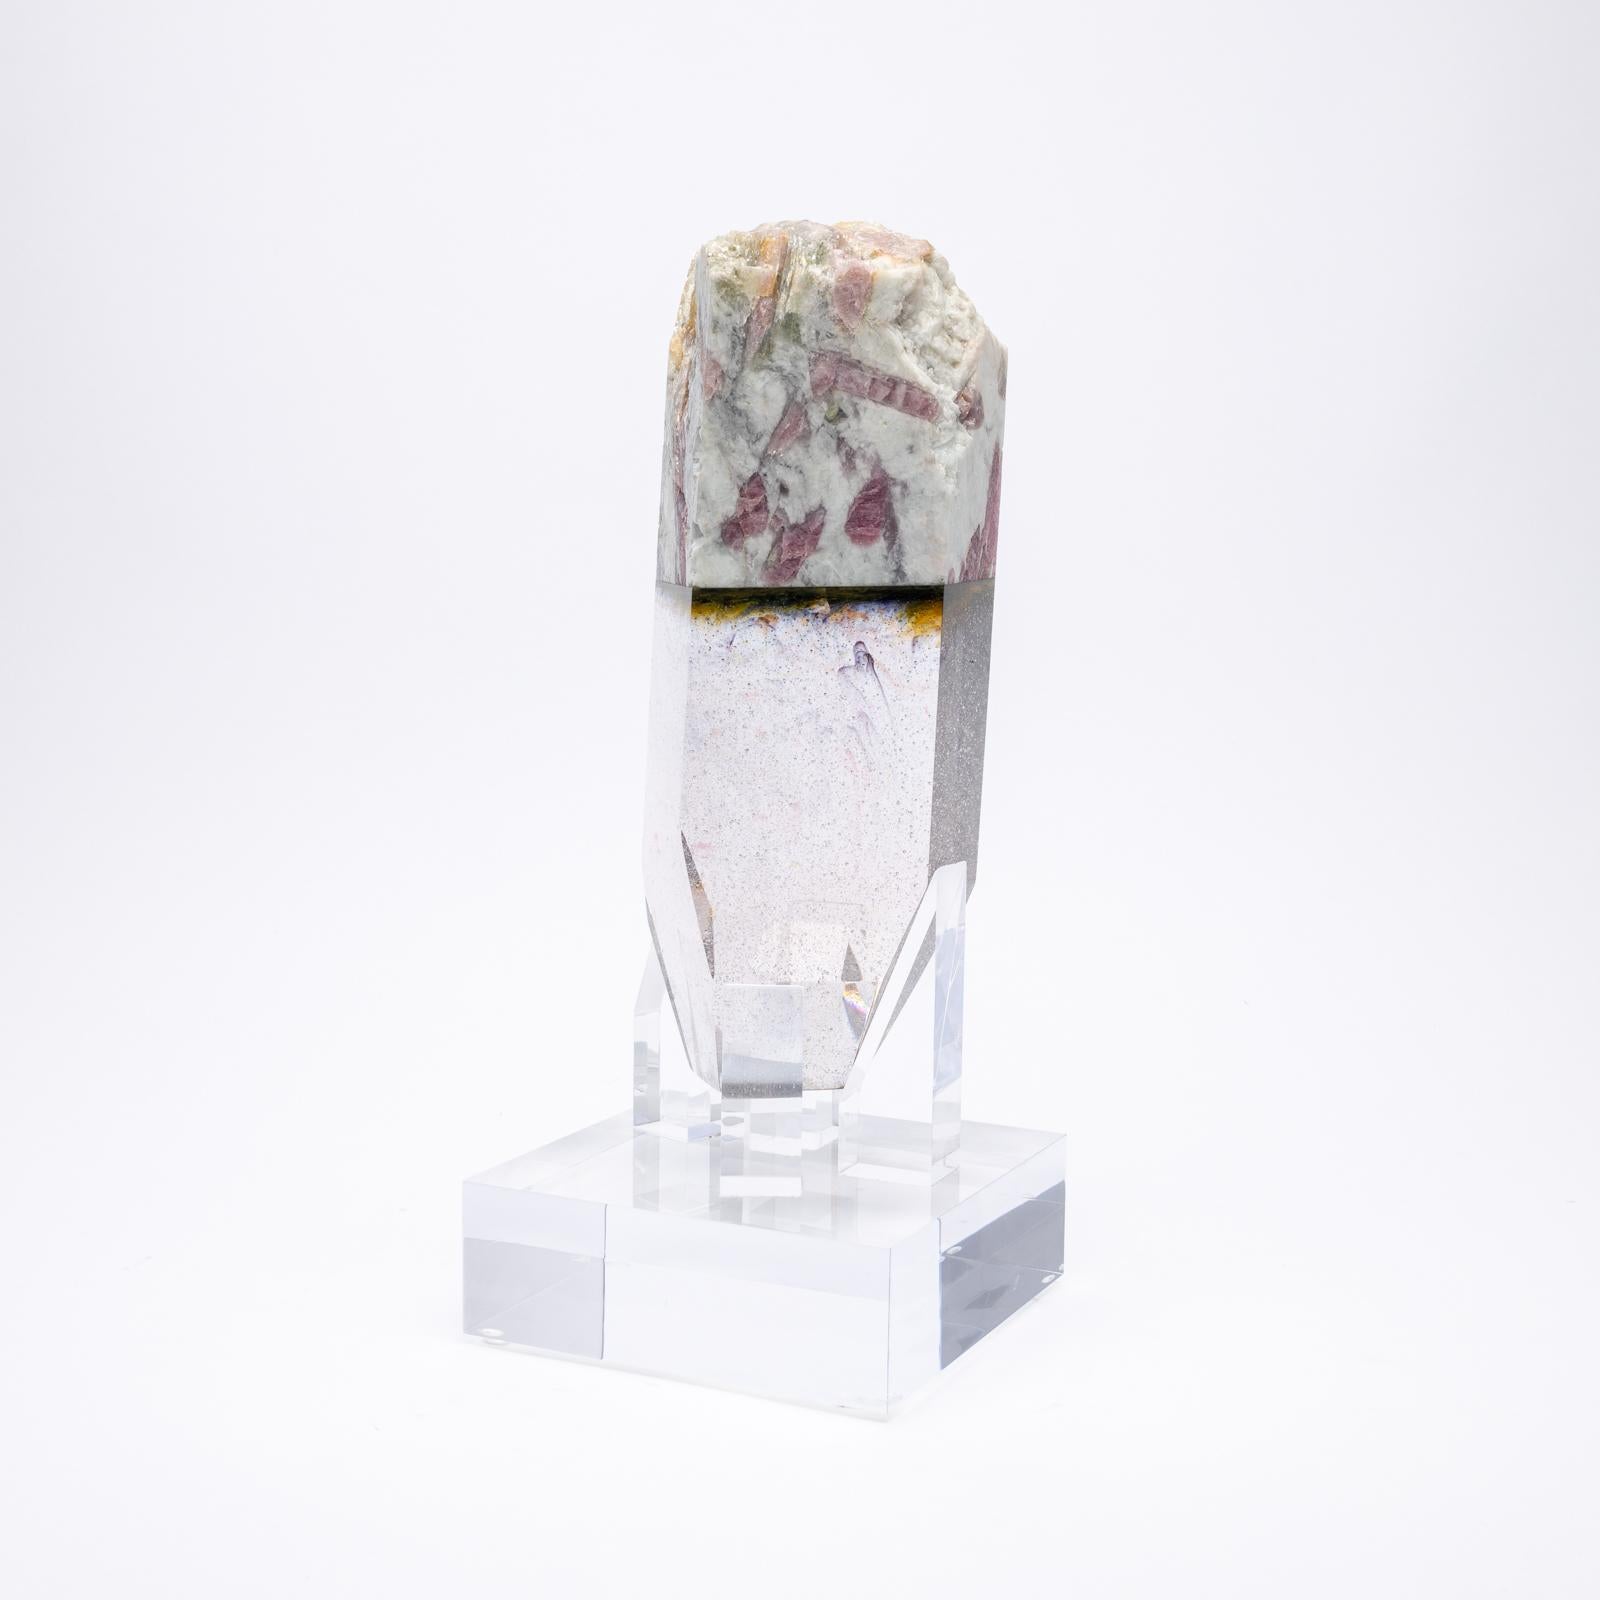 Pynkypyne, organische Glasskulptur aus Wassermelonen-Turmalin und Quarz aus der TYME-Kollektion, eine Zusammenarbeit von Orfeo Quagliata und Ernesto Durán

TYME-Kollektion 
Ein Tanz zwischen Reinheit und Detail bringt einzigartige Stücke hervor,